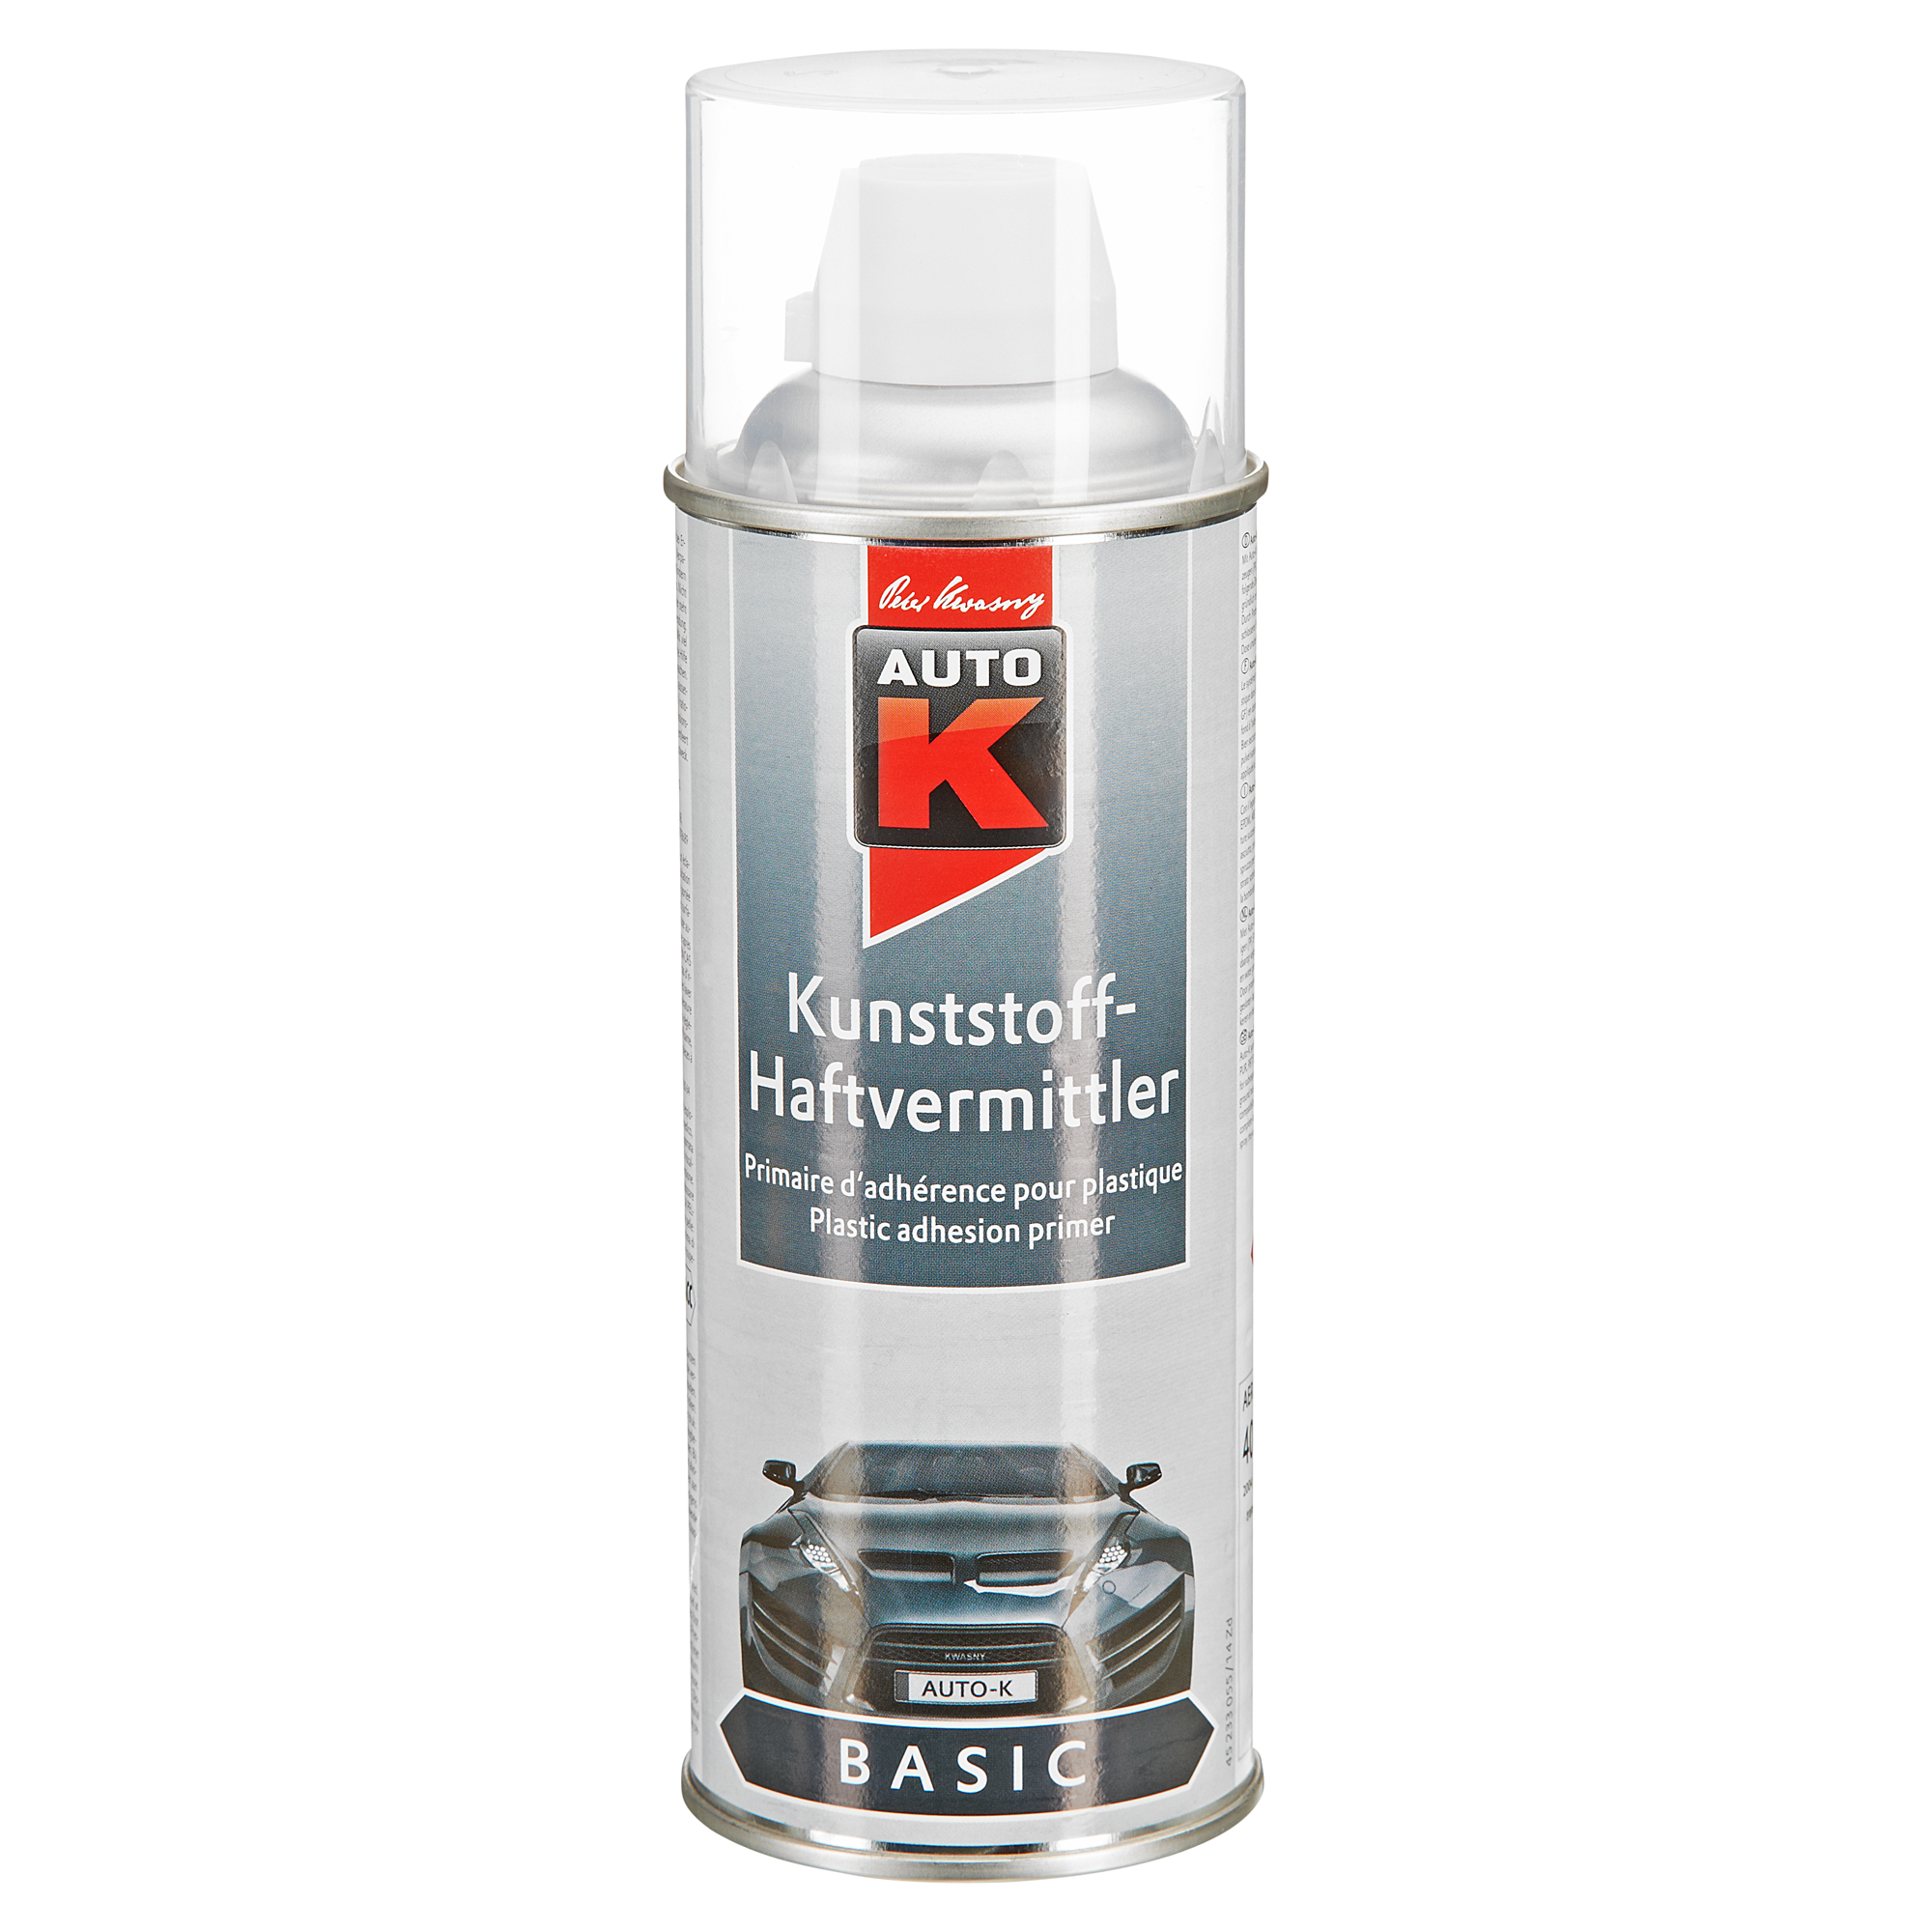 1 x 400 ml Kunststoffprimer Spray Haftvermittler für Kunstoffe am Auto :  : Auto & Motorrad